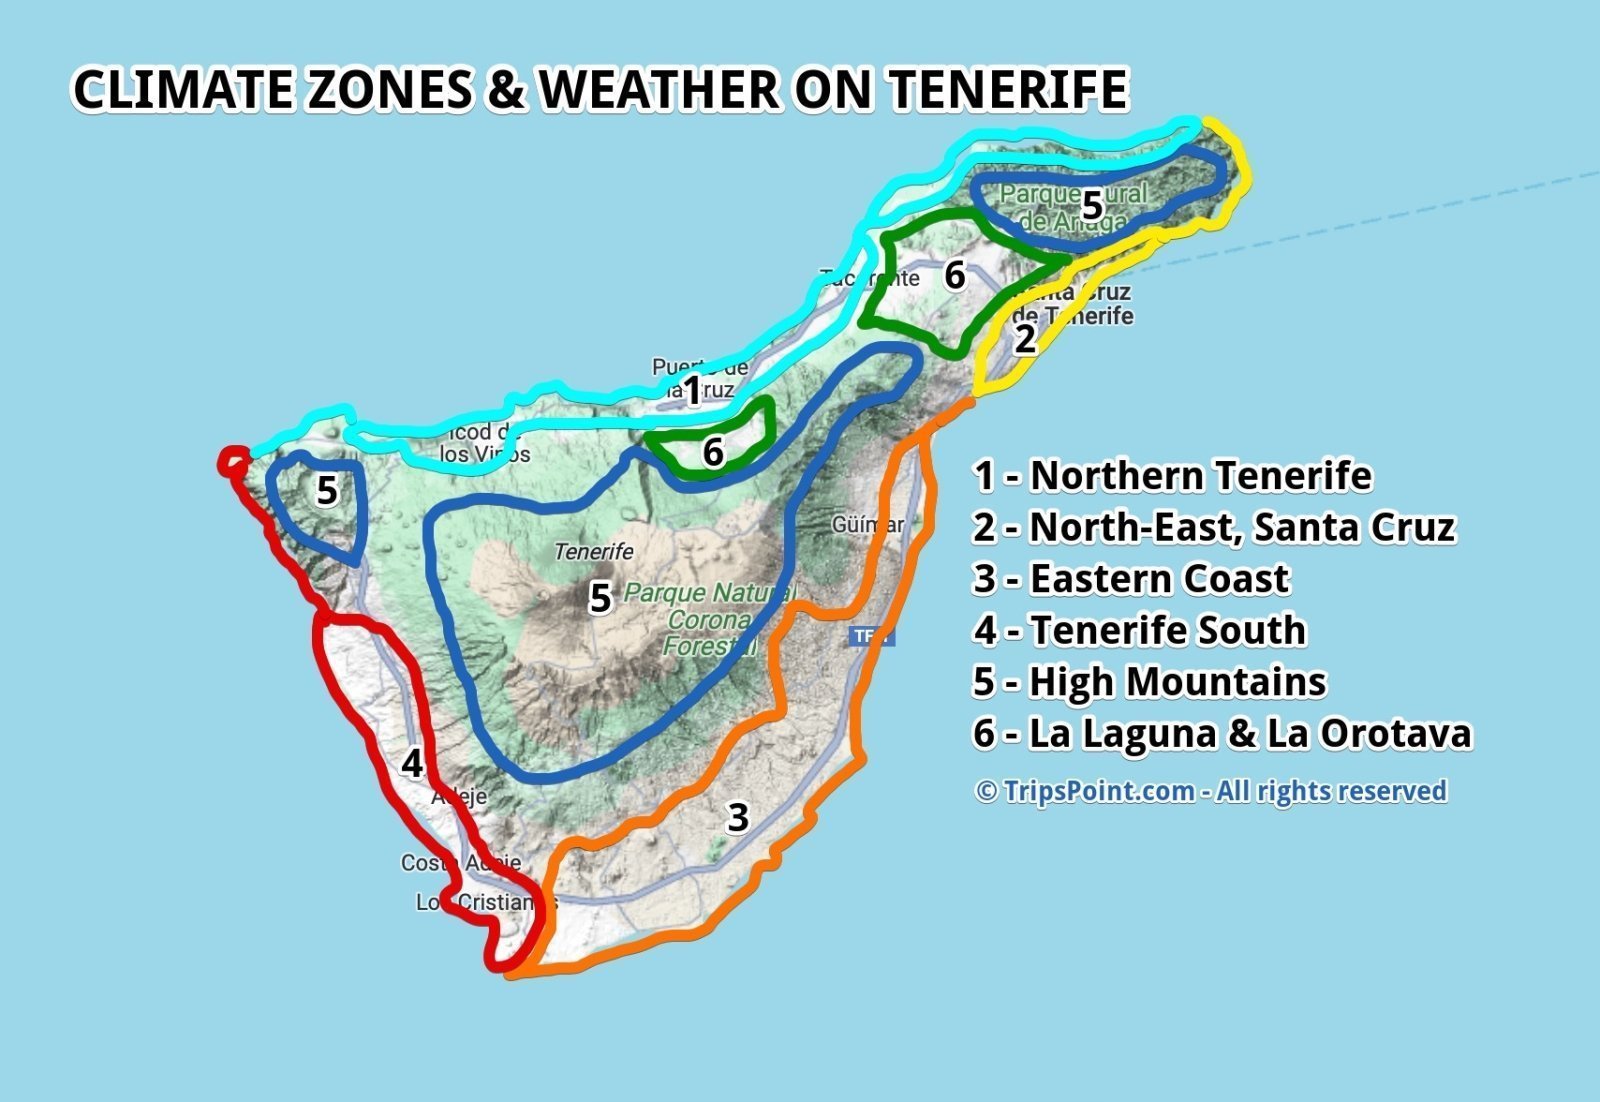 Climate zones on Tenerife.